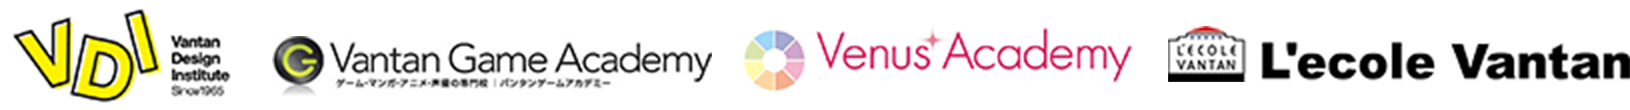 Vantan / VDI / Vantan Game Academy / Venus Academy / L'ecole Vantan